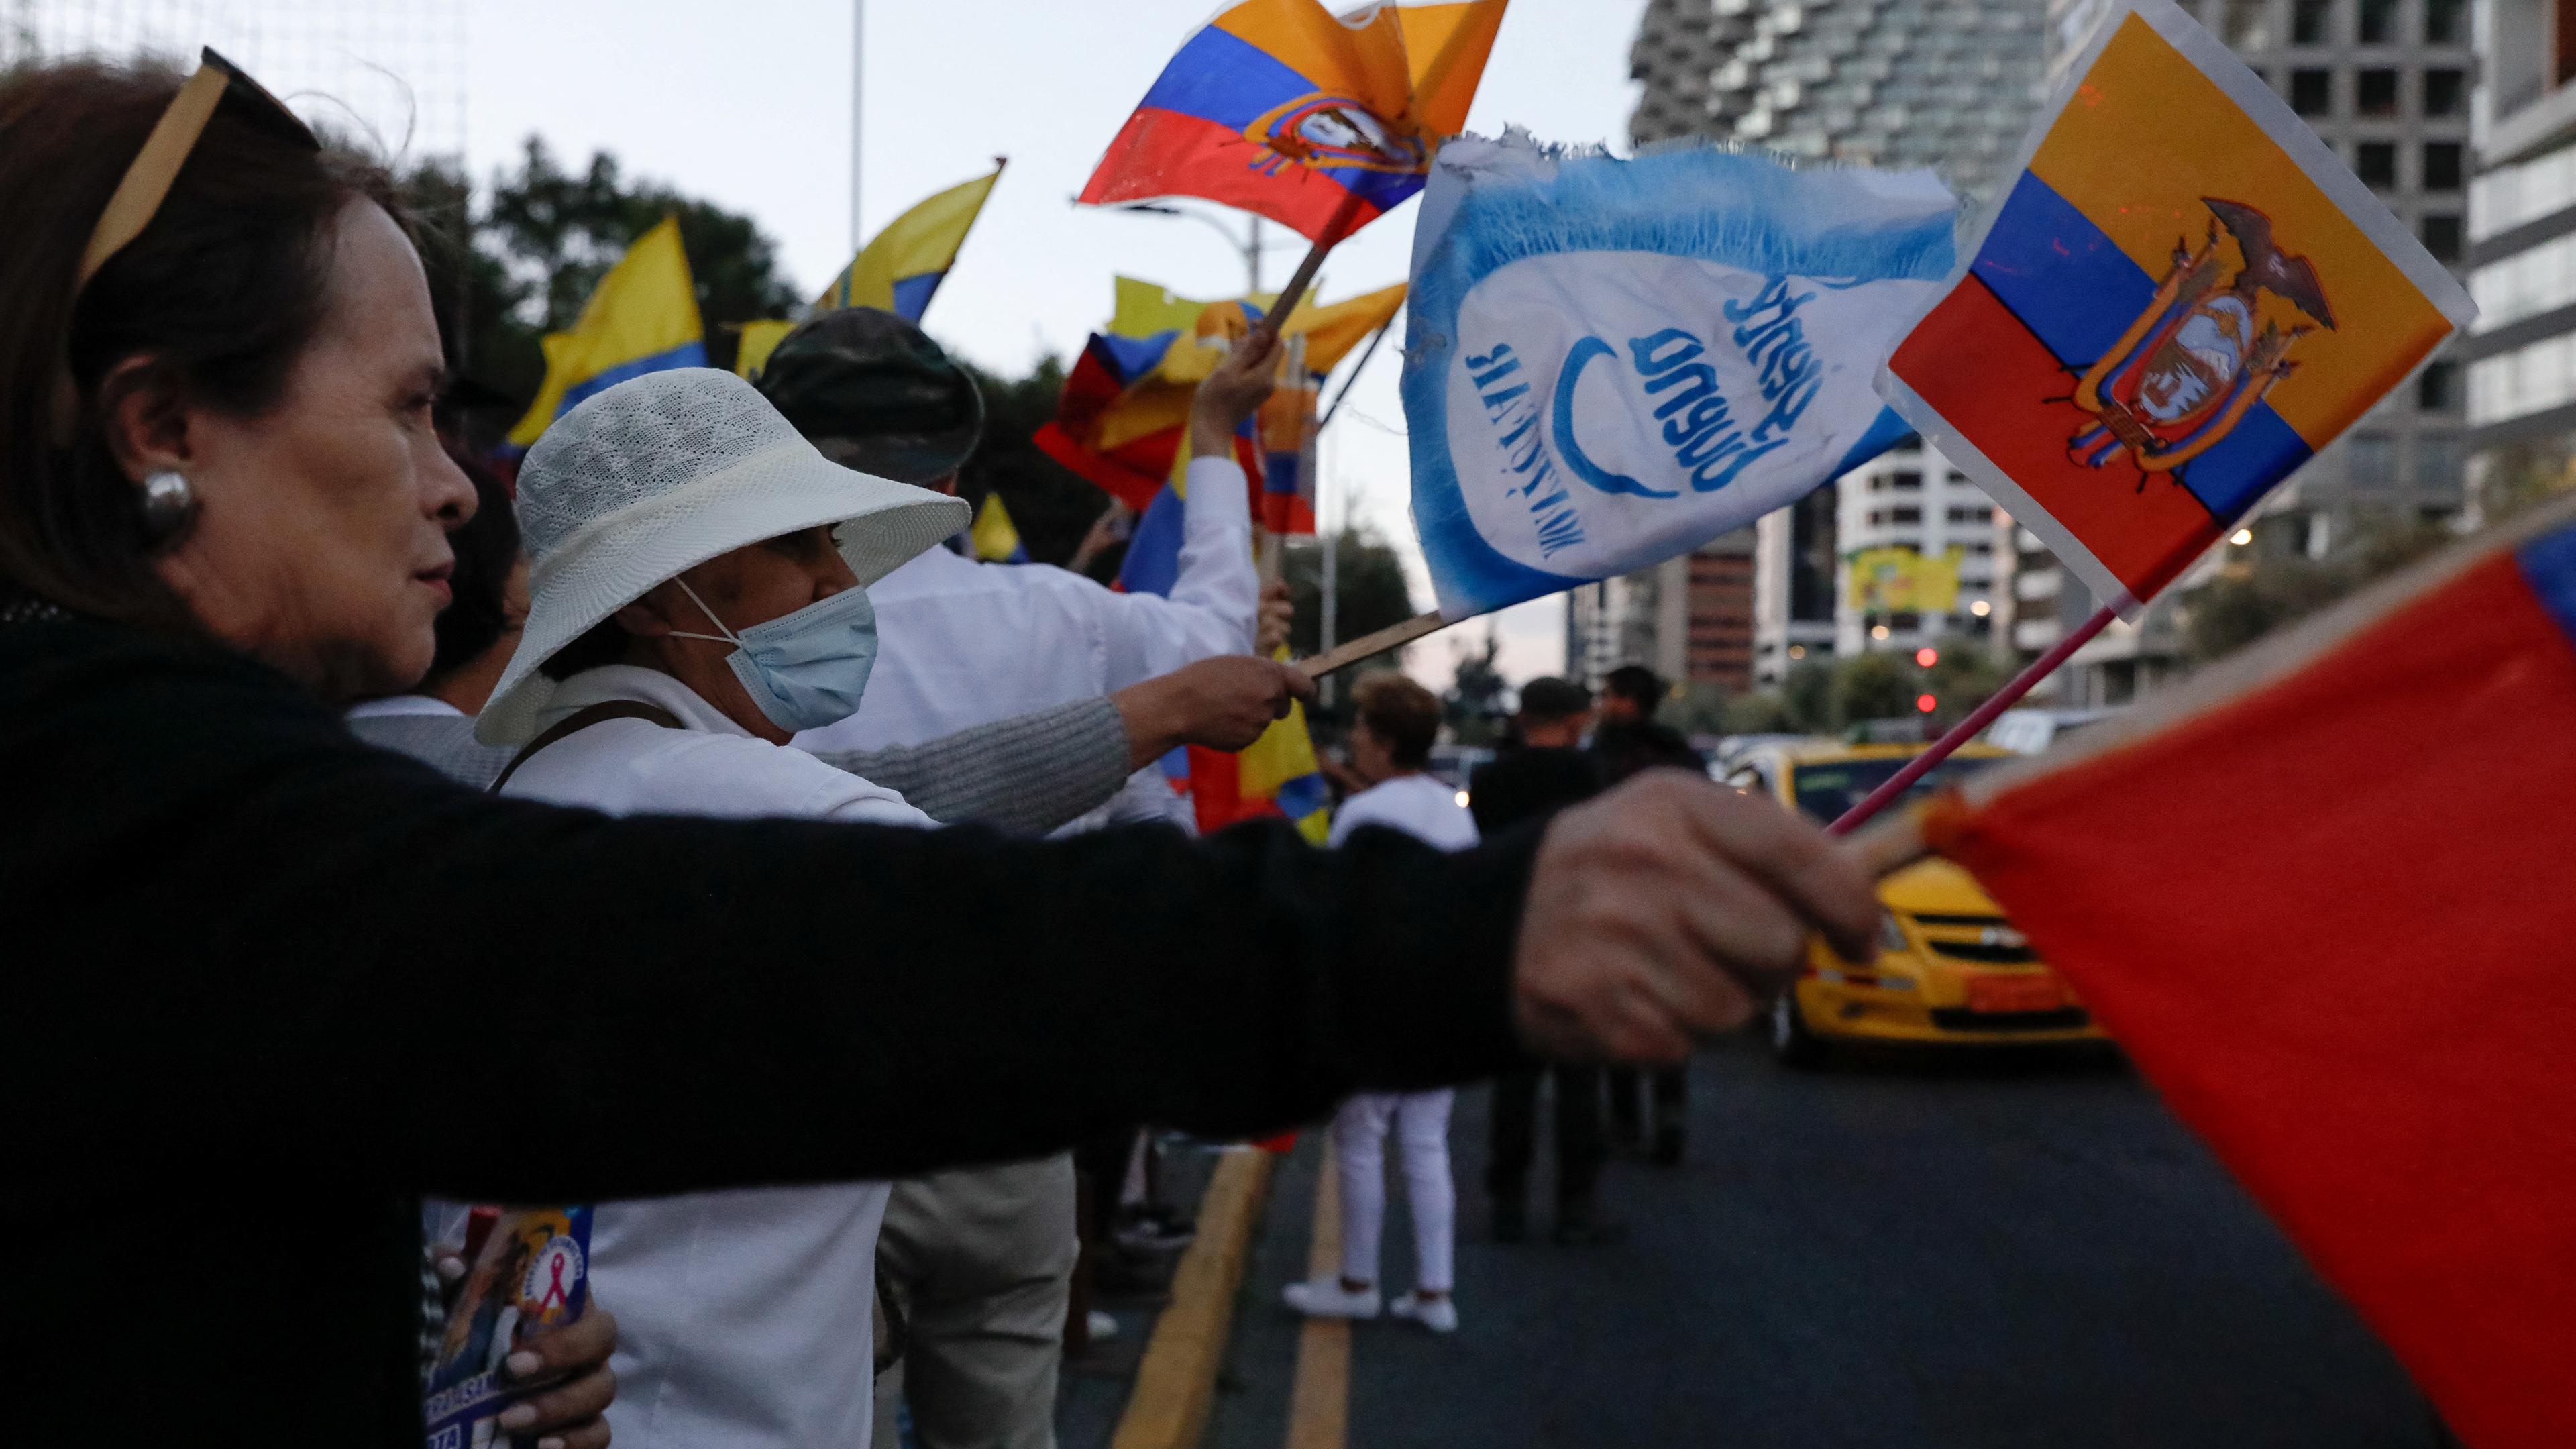 Fahnen schwenkende Menschen protestieren während einer Demonstration nach der Ermordung des ecuadorianischen Präsidentschaftskandidaten Fernando Villavicencio.